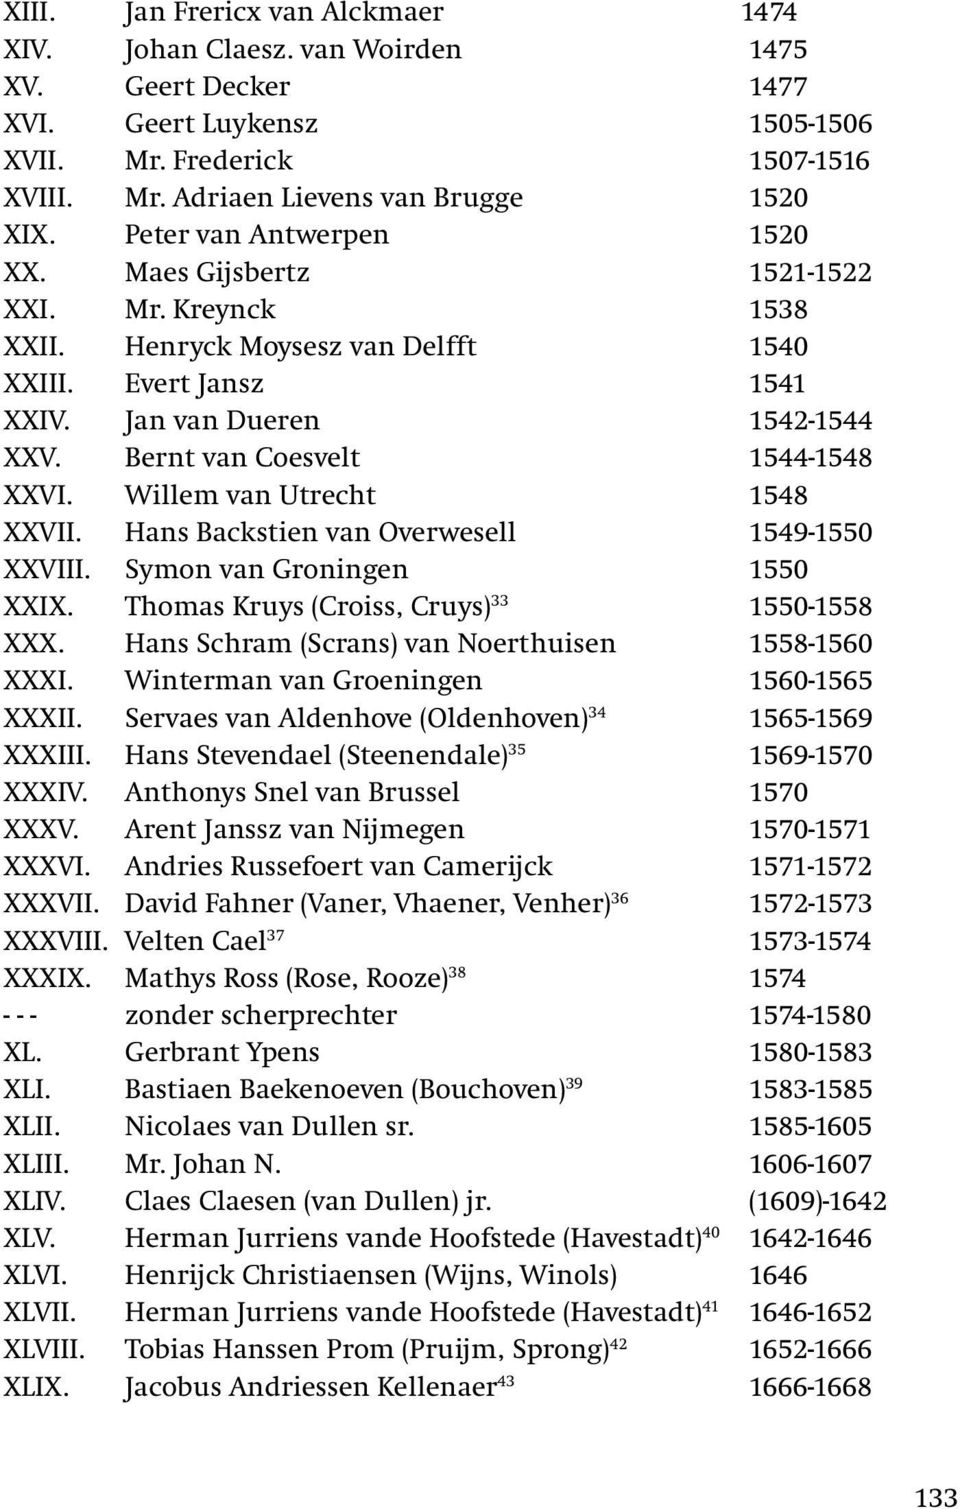 Bernt van Coesvelt 1544-1548 XXVI. Willem van Utrecht 1548 XXVII. Hans Backstien van Overwesell 1549-1550 XXVIII. Symon van Groningen 1550 XXIX. Thomas Kruys (Croiss, Cruys) 33 1550-1558 XXX.